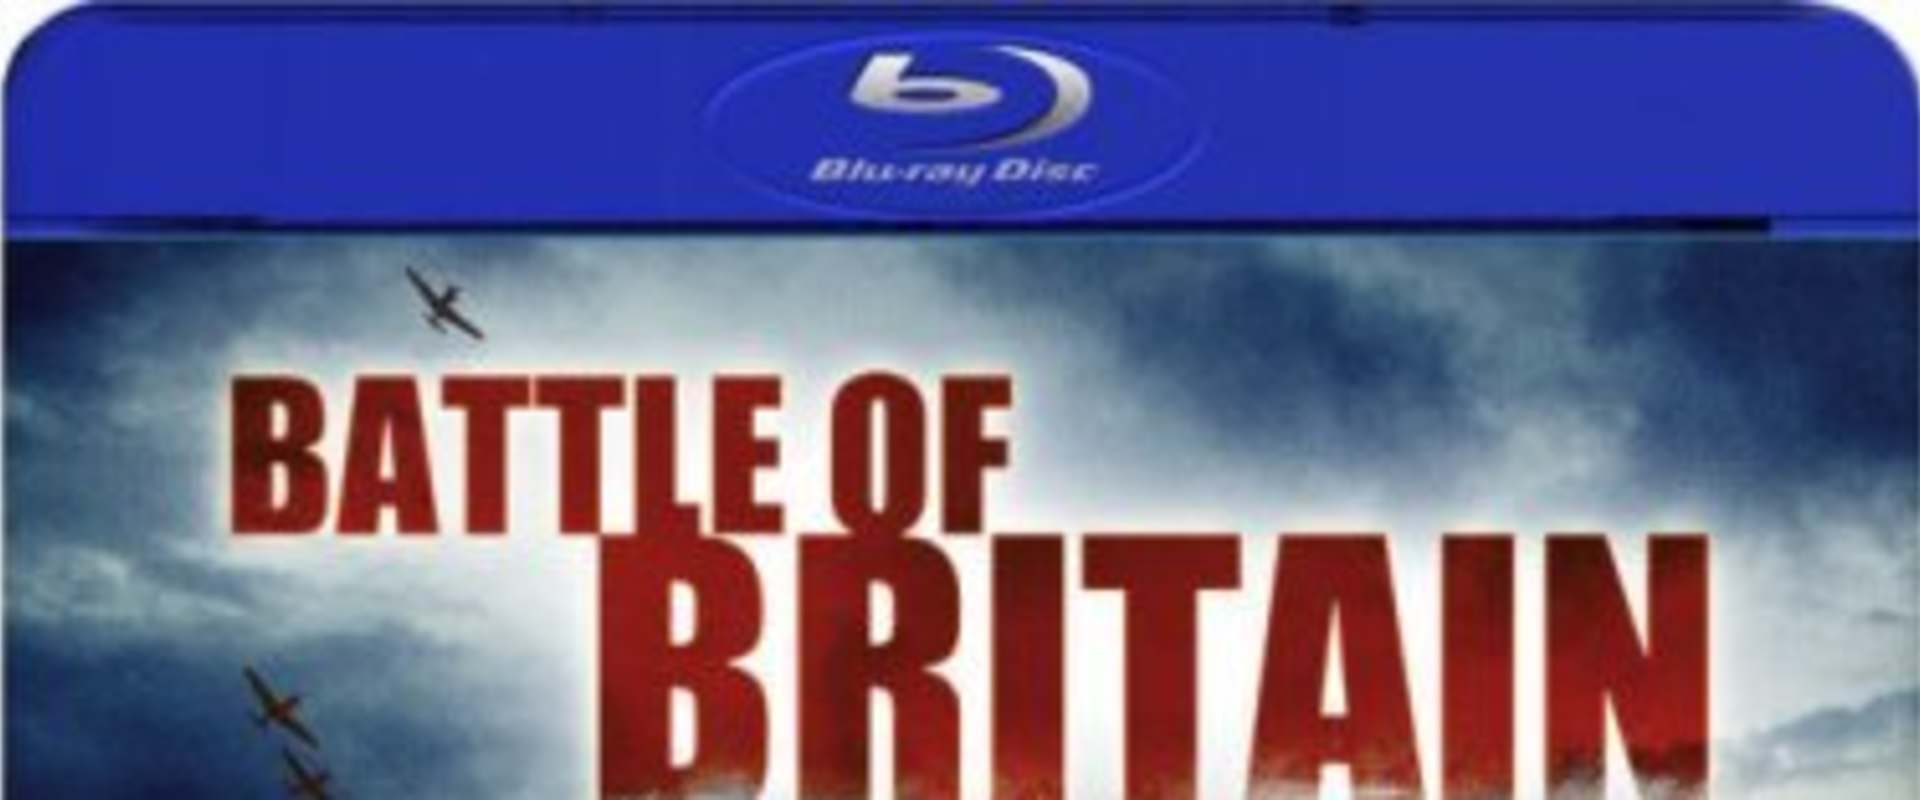 Battle of Britain background 1